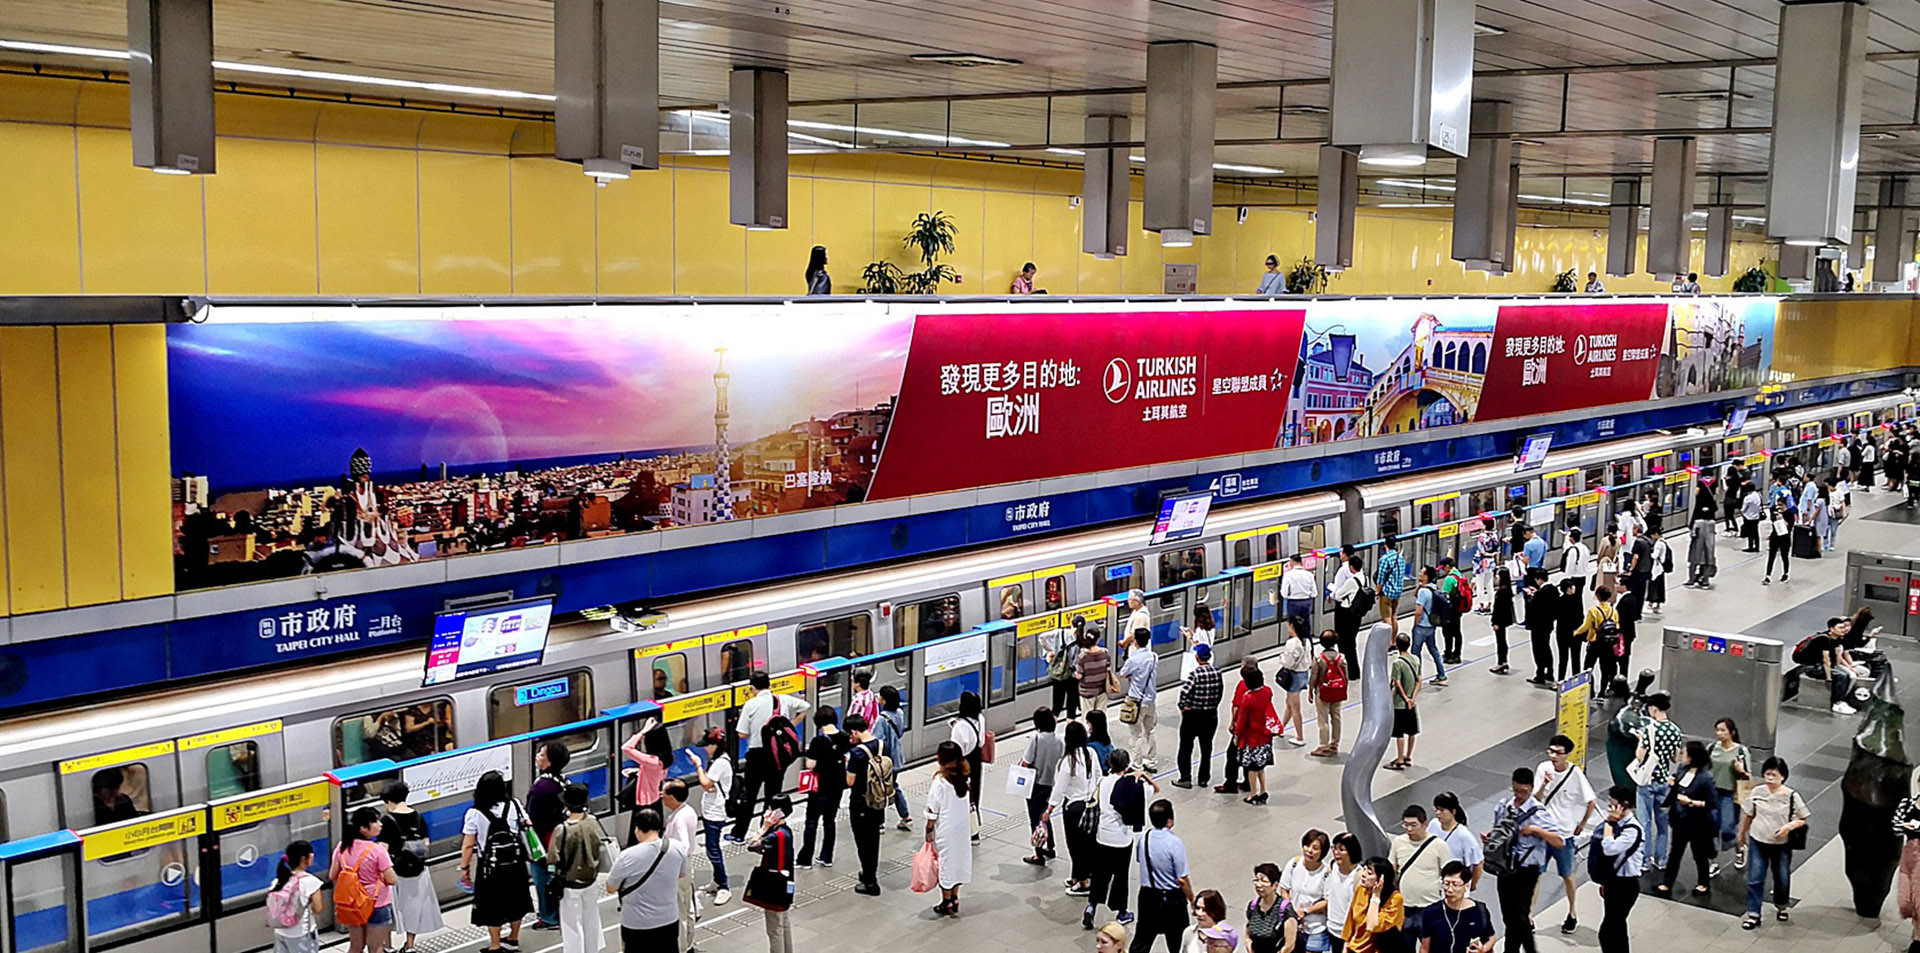 台北捷運廣告刊登  市政府站 土耳其航空